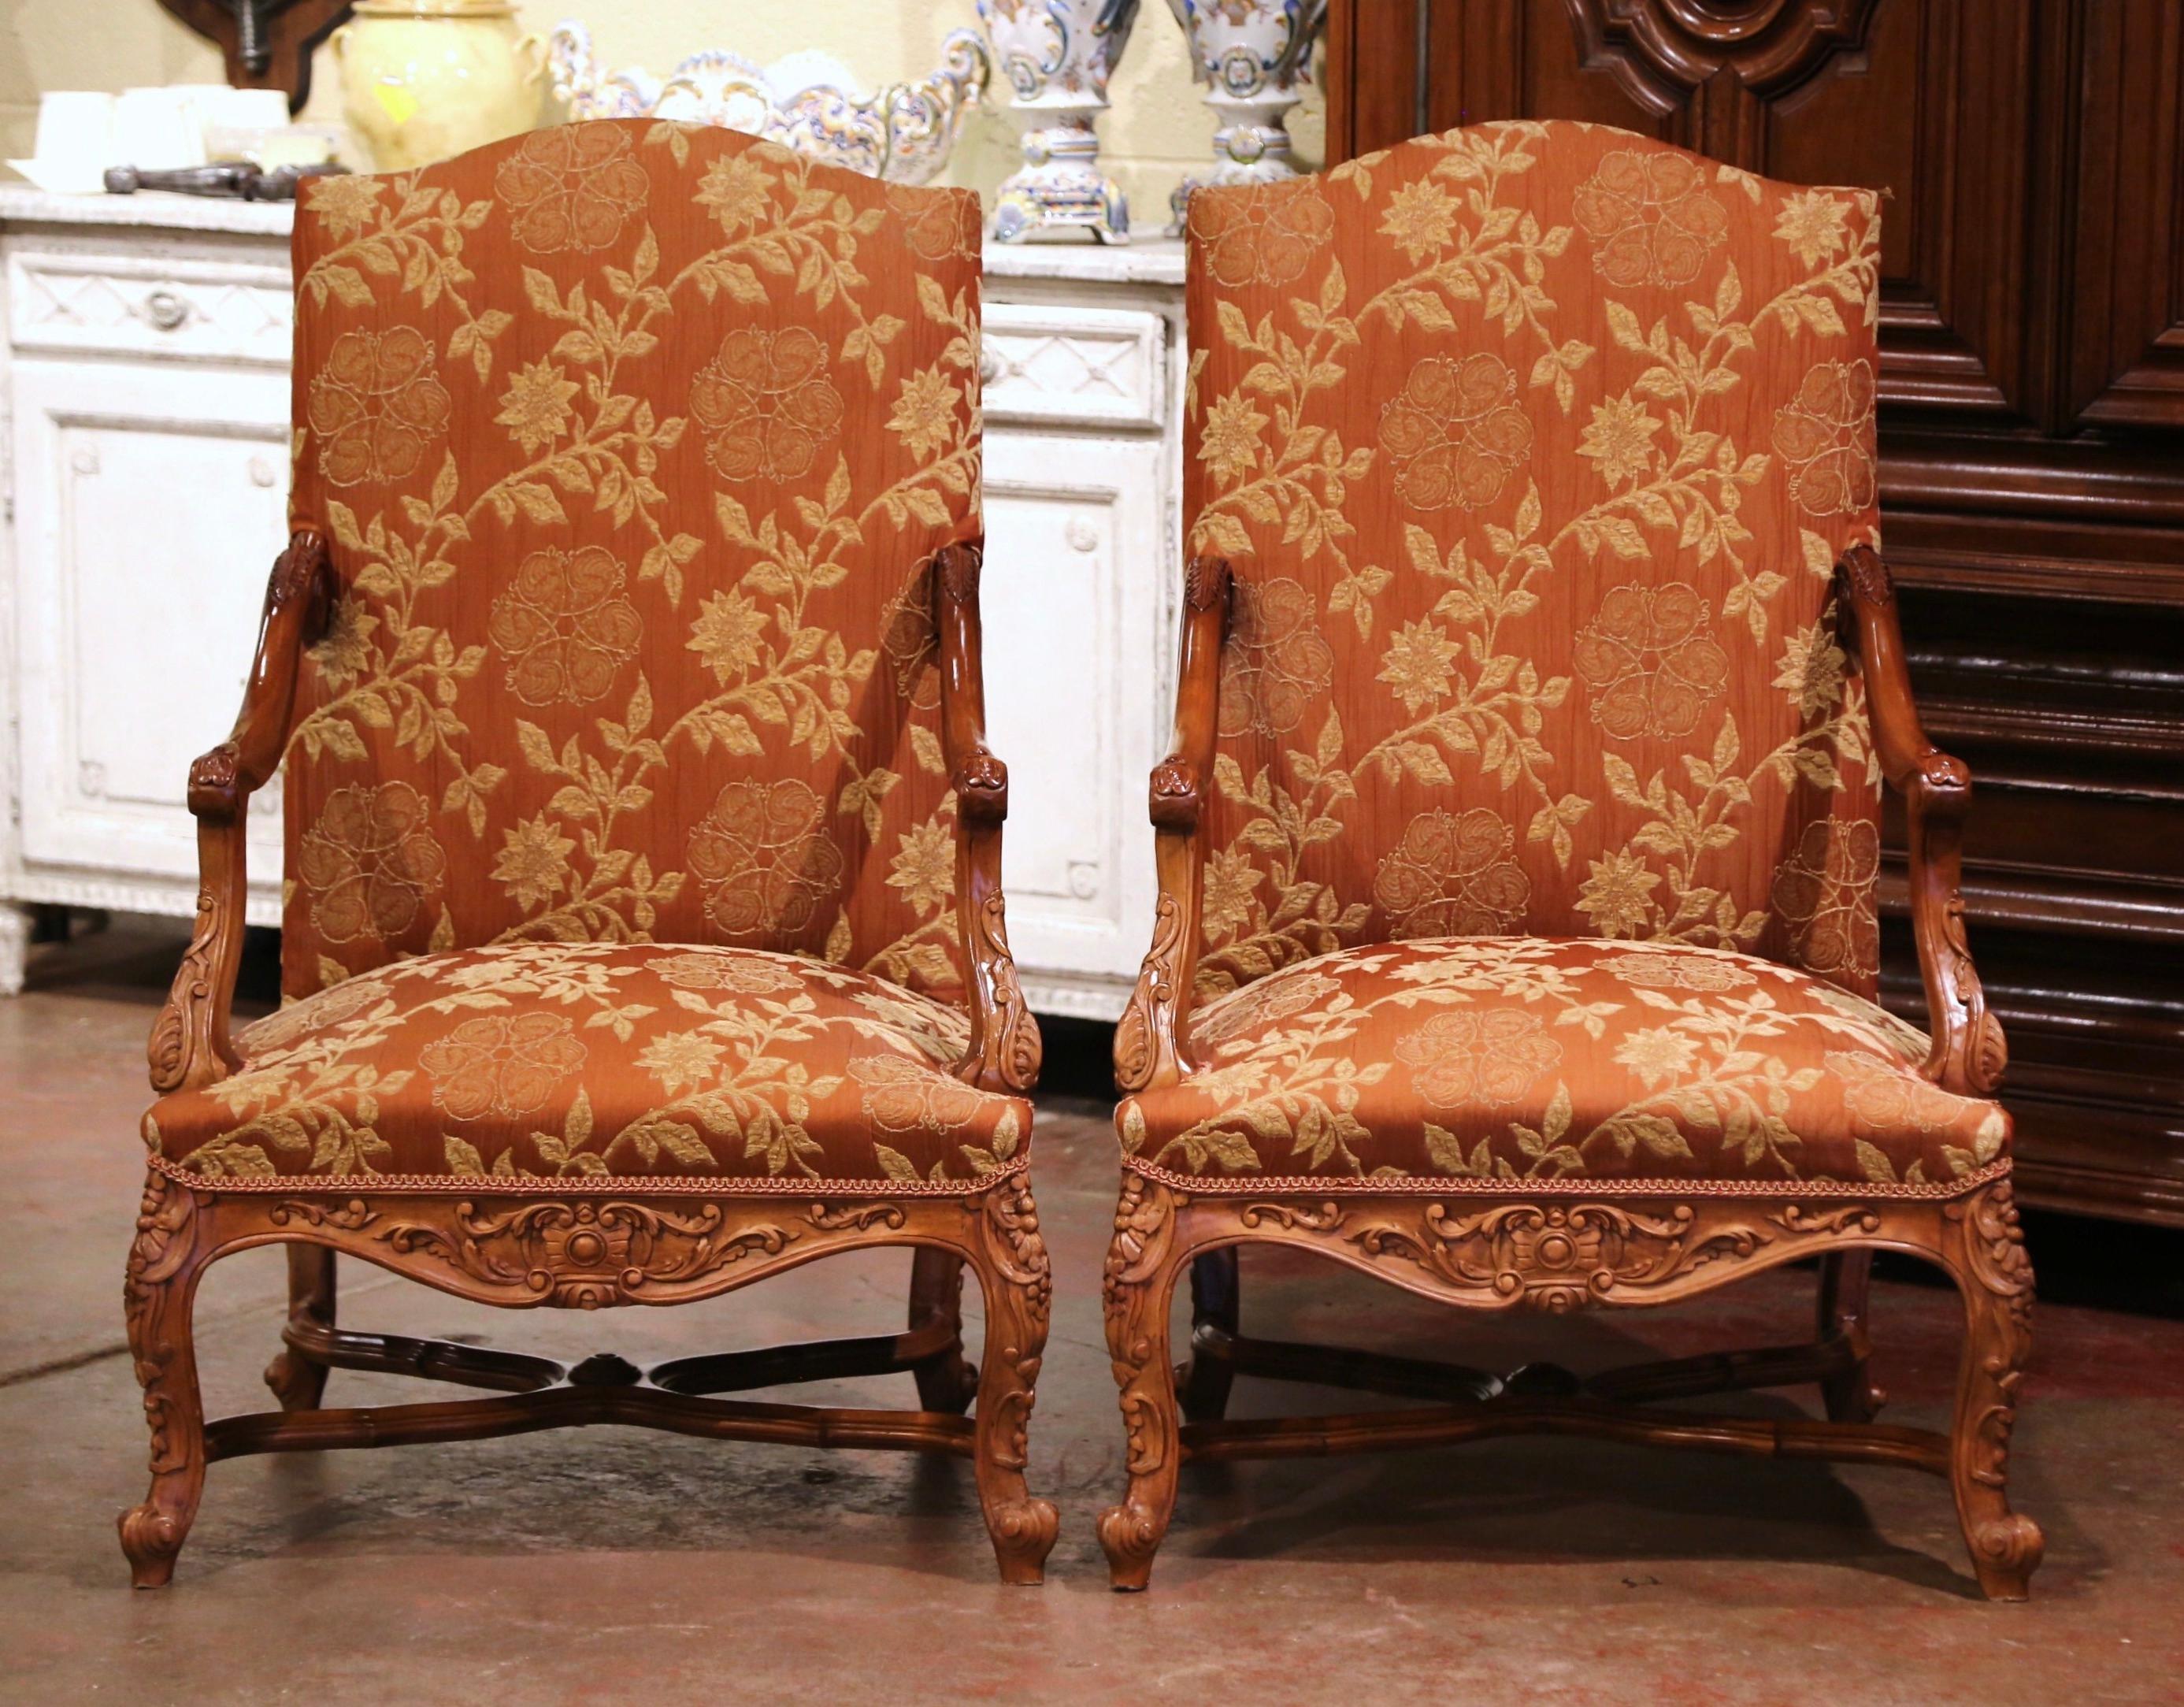 Fabriqué en Provence (France) vers 1880, ce fauteuil confortable repose sur des pieds cabrioles décorés de feuilles d'acanthe à l'épaulement et se terminant par des pieds en escargot au-dessus d'un brancard en forme de X. Les deux fauteuils ont un